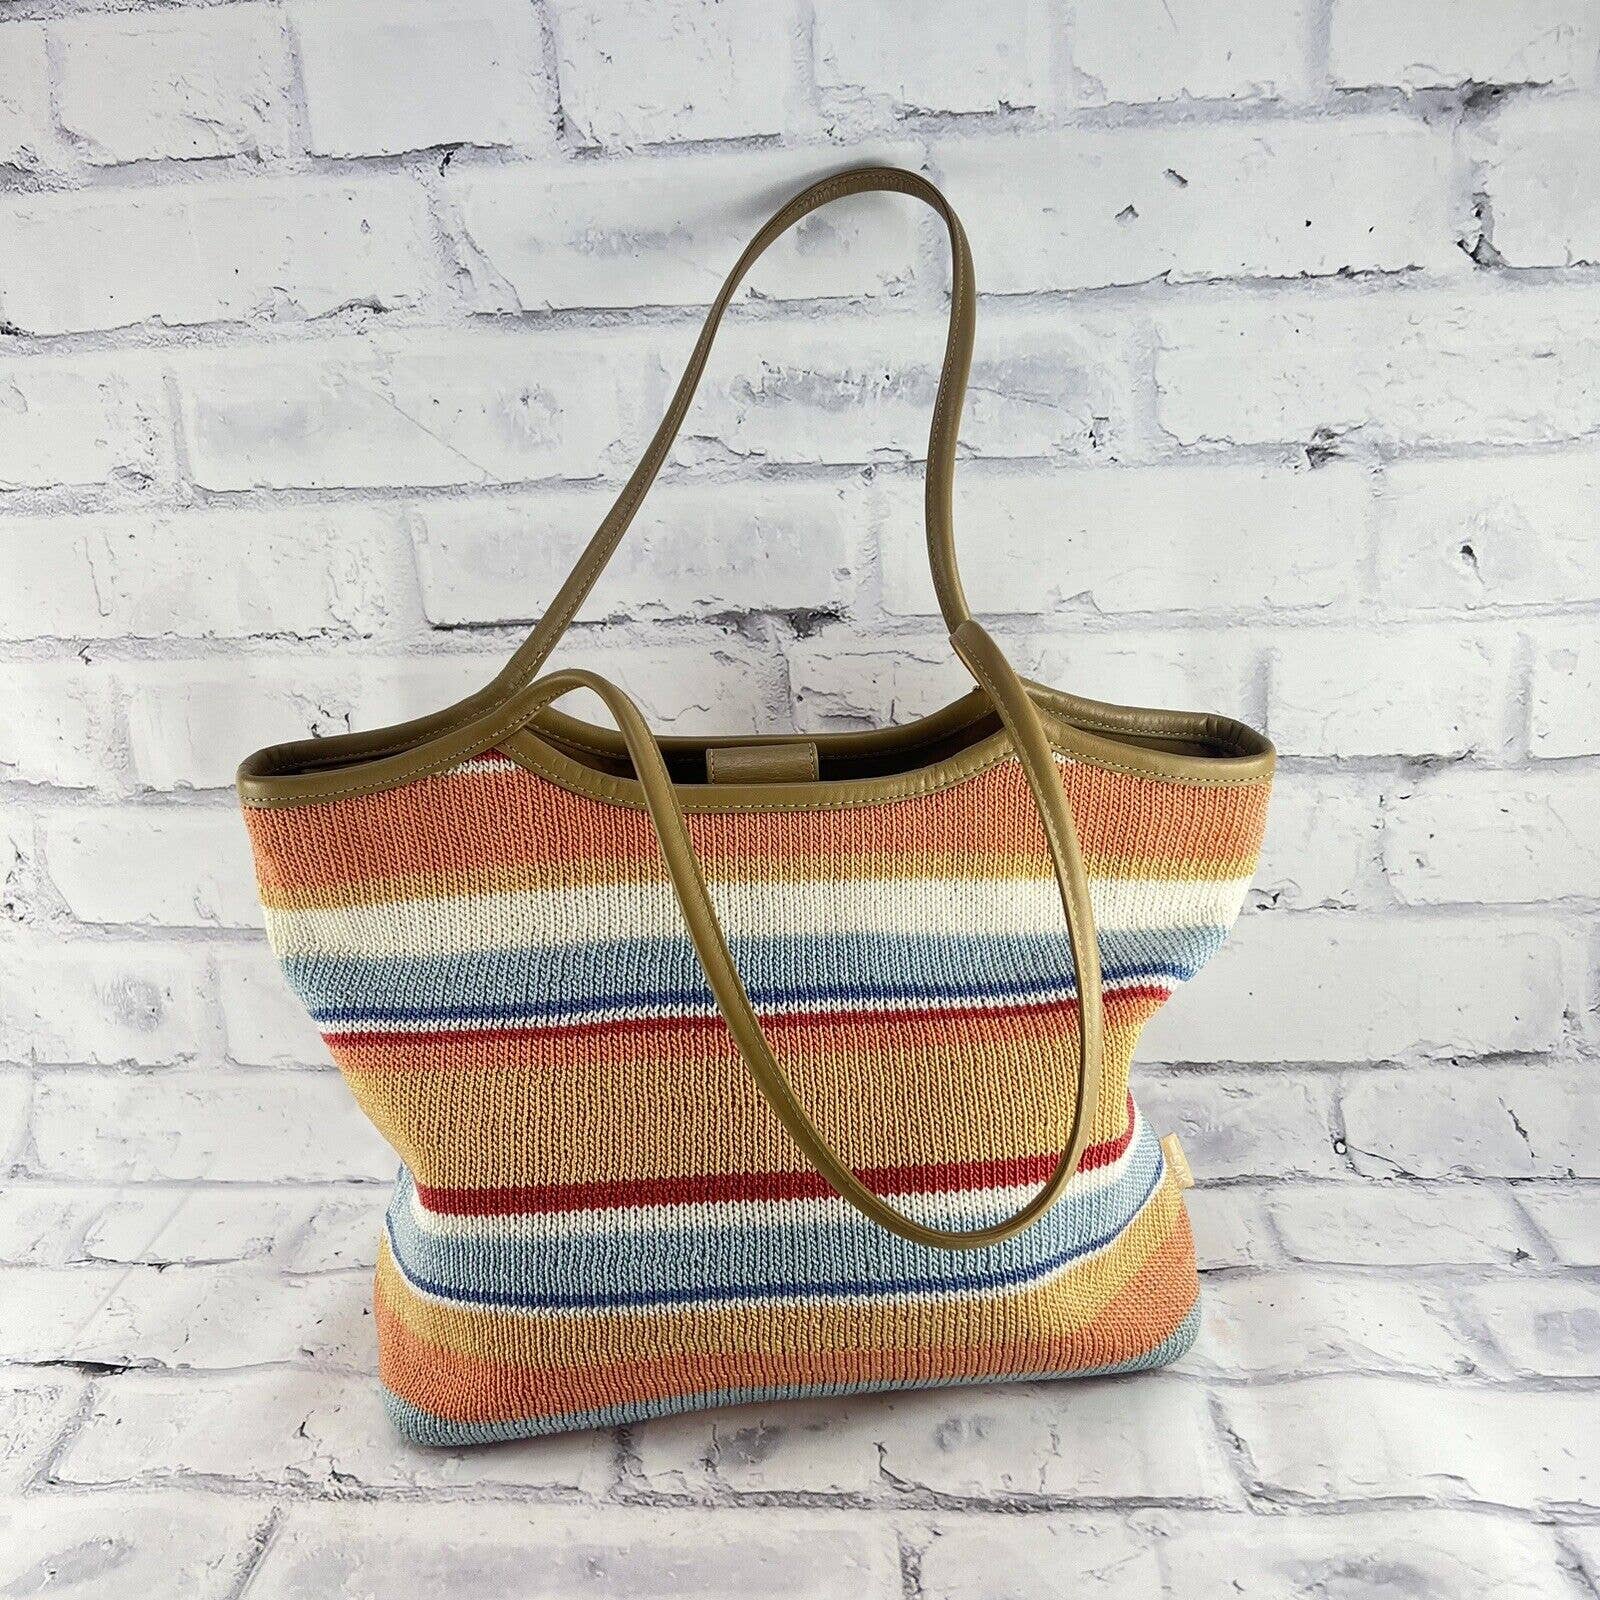 THE SAK Shoulder Bag Multi Color Striped Crochet Knit Bag Purse Tote